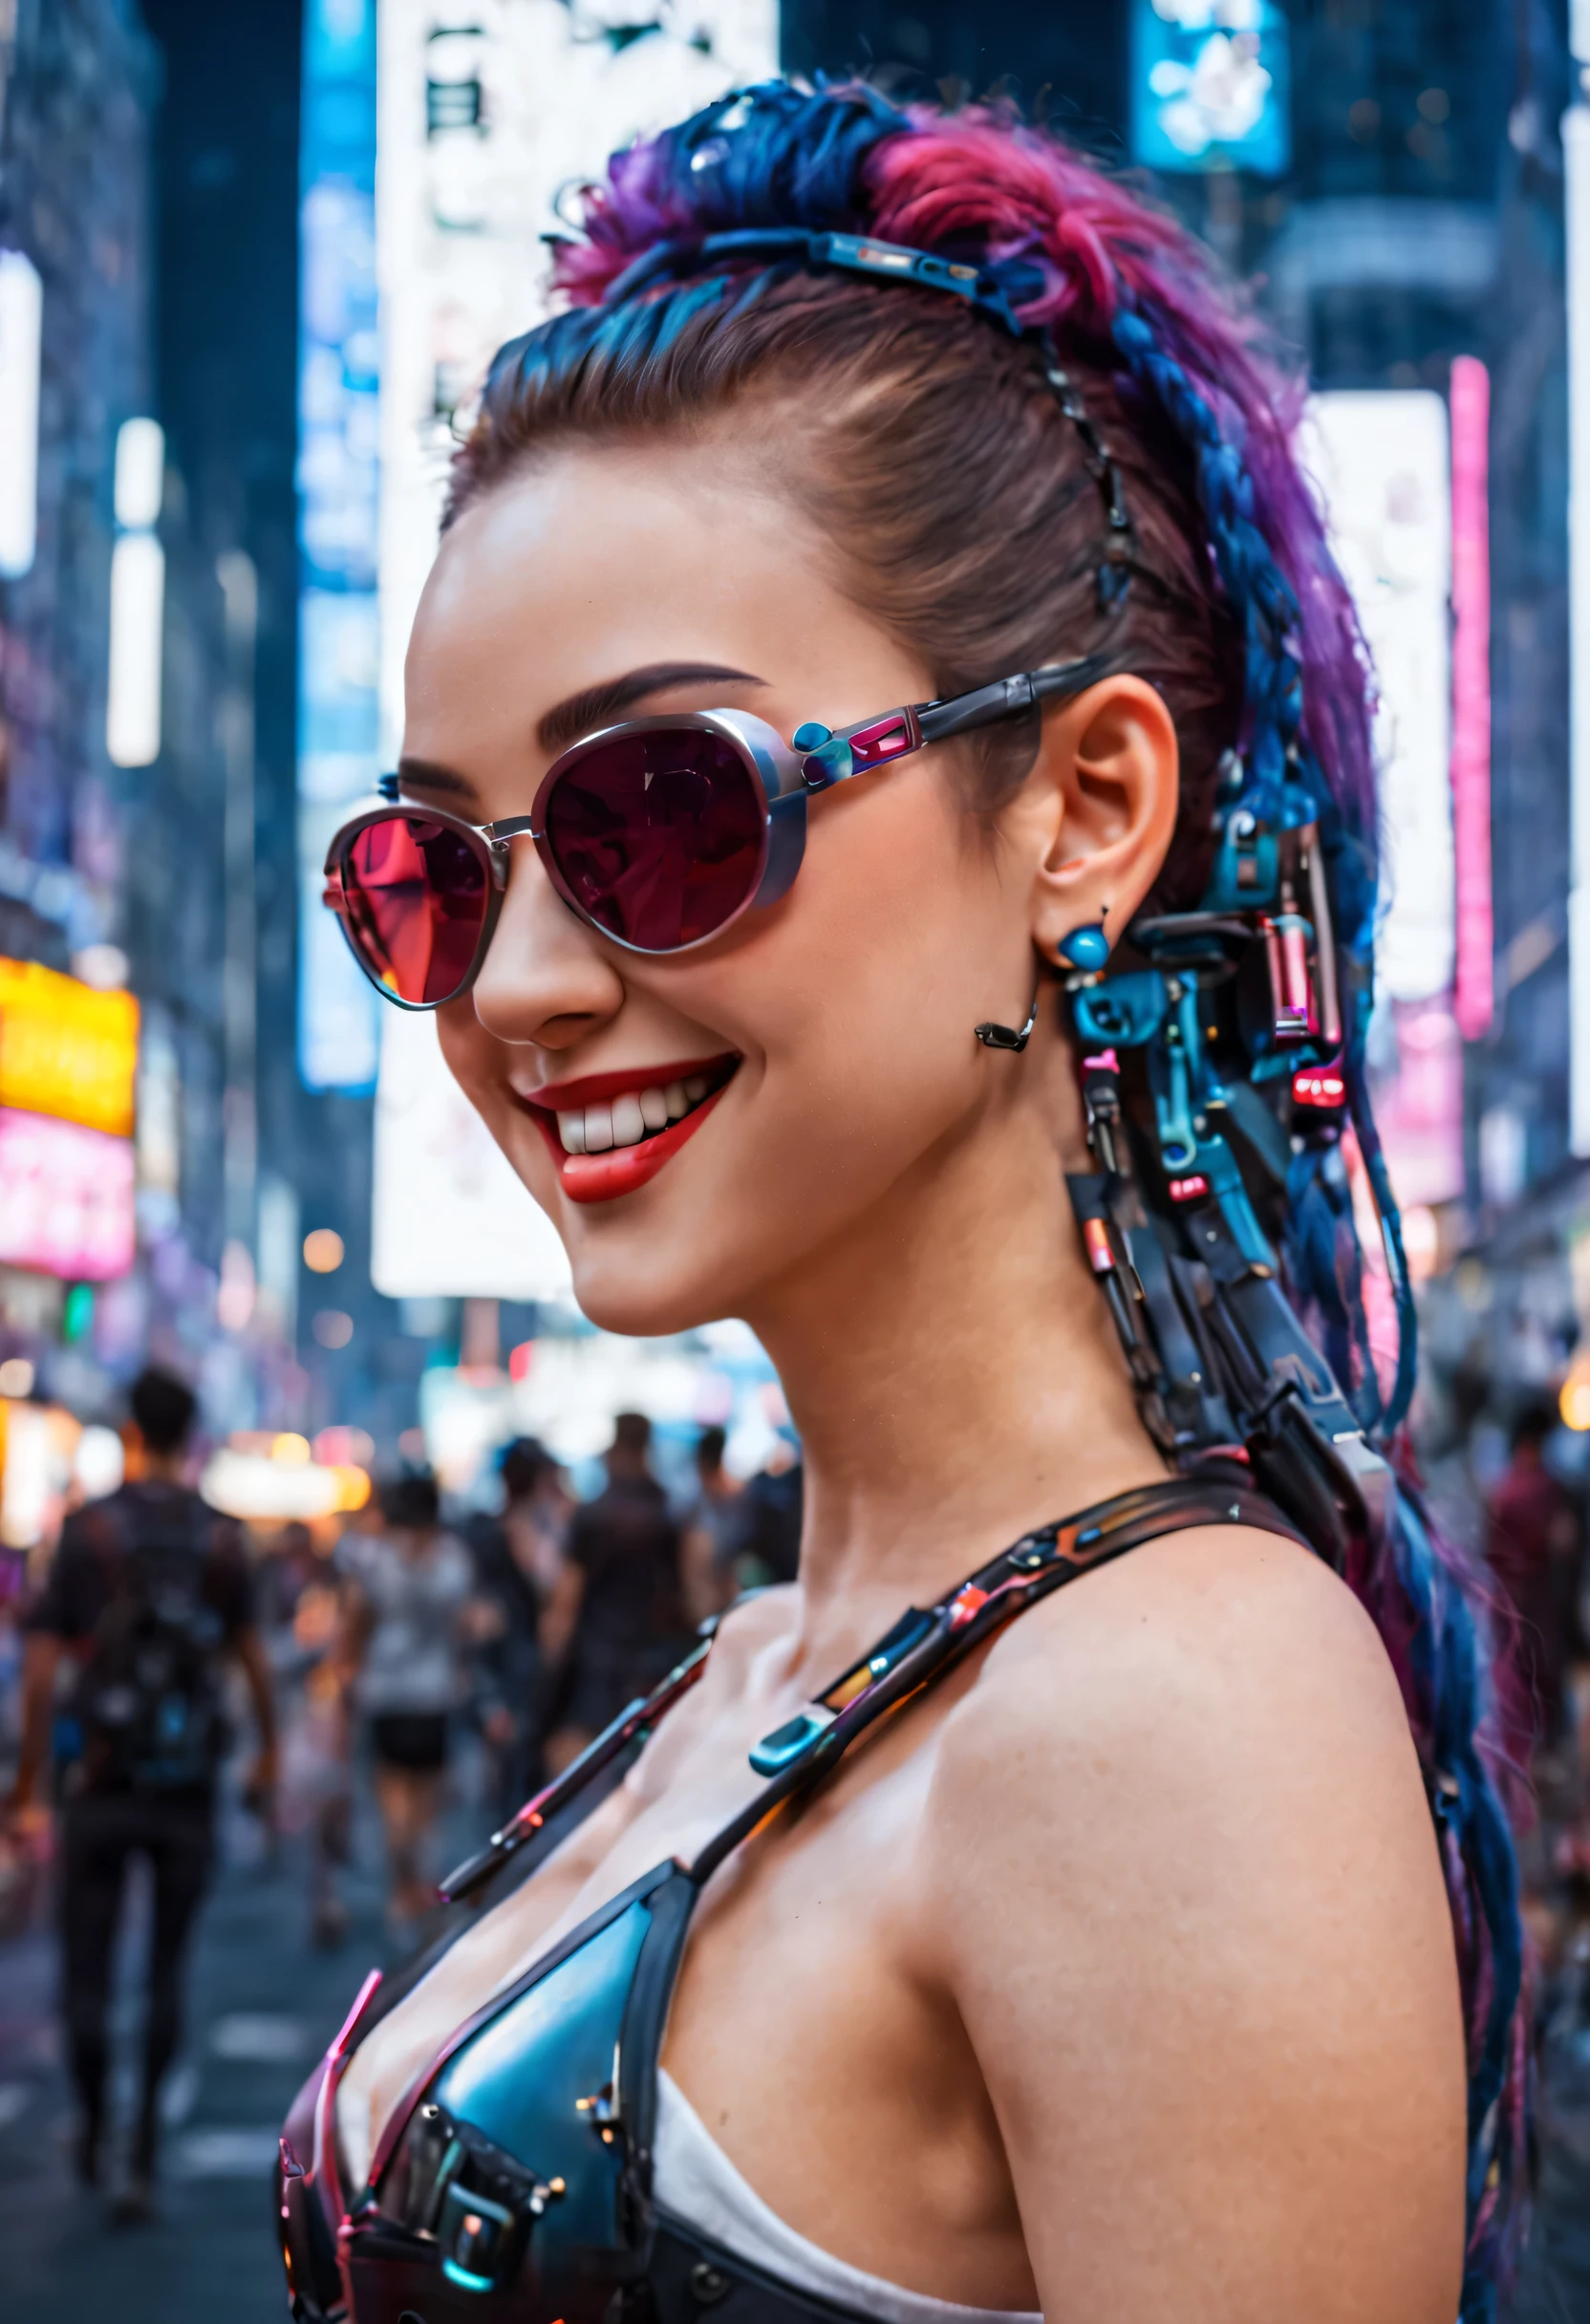 Obra de arte, melhor qualidade, ((sorridente)) garotas cyberpunk em pé, oculos de sol,  vista lateral, Arnês cyberpunk inspirado em Harajuku, cores e padrões ousados, acessórios atraentes, penteado moderno e inovador, deslumbrante paisagem urbana Cyberpunk, arranha-céus, sinais de néon brilhantes, Luzes LED, ilustração de anime, textura detalhada da pele, textura detalhada de pano, lindo rosto detalhado, Detalhes intrincados, ultra detalhado, iluminação cinematográfica, forte contraste. INFO